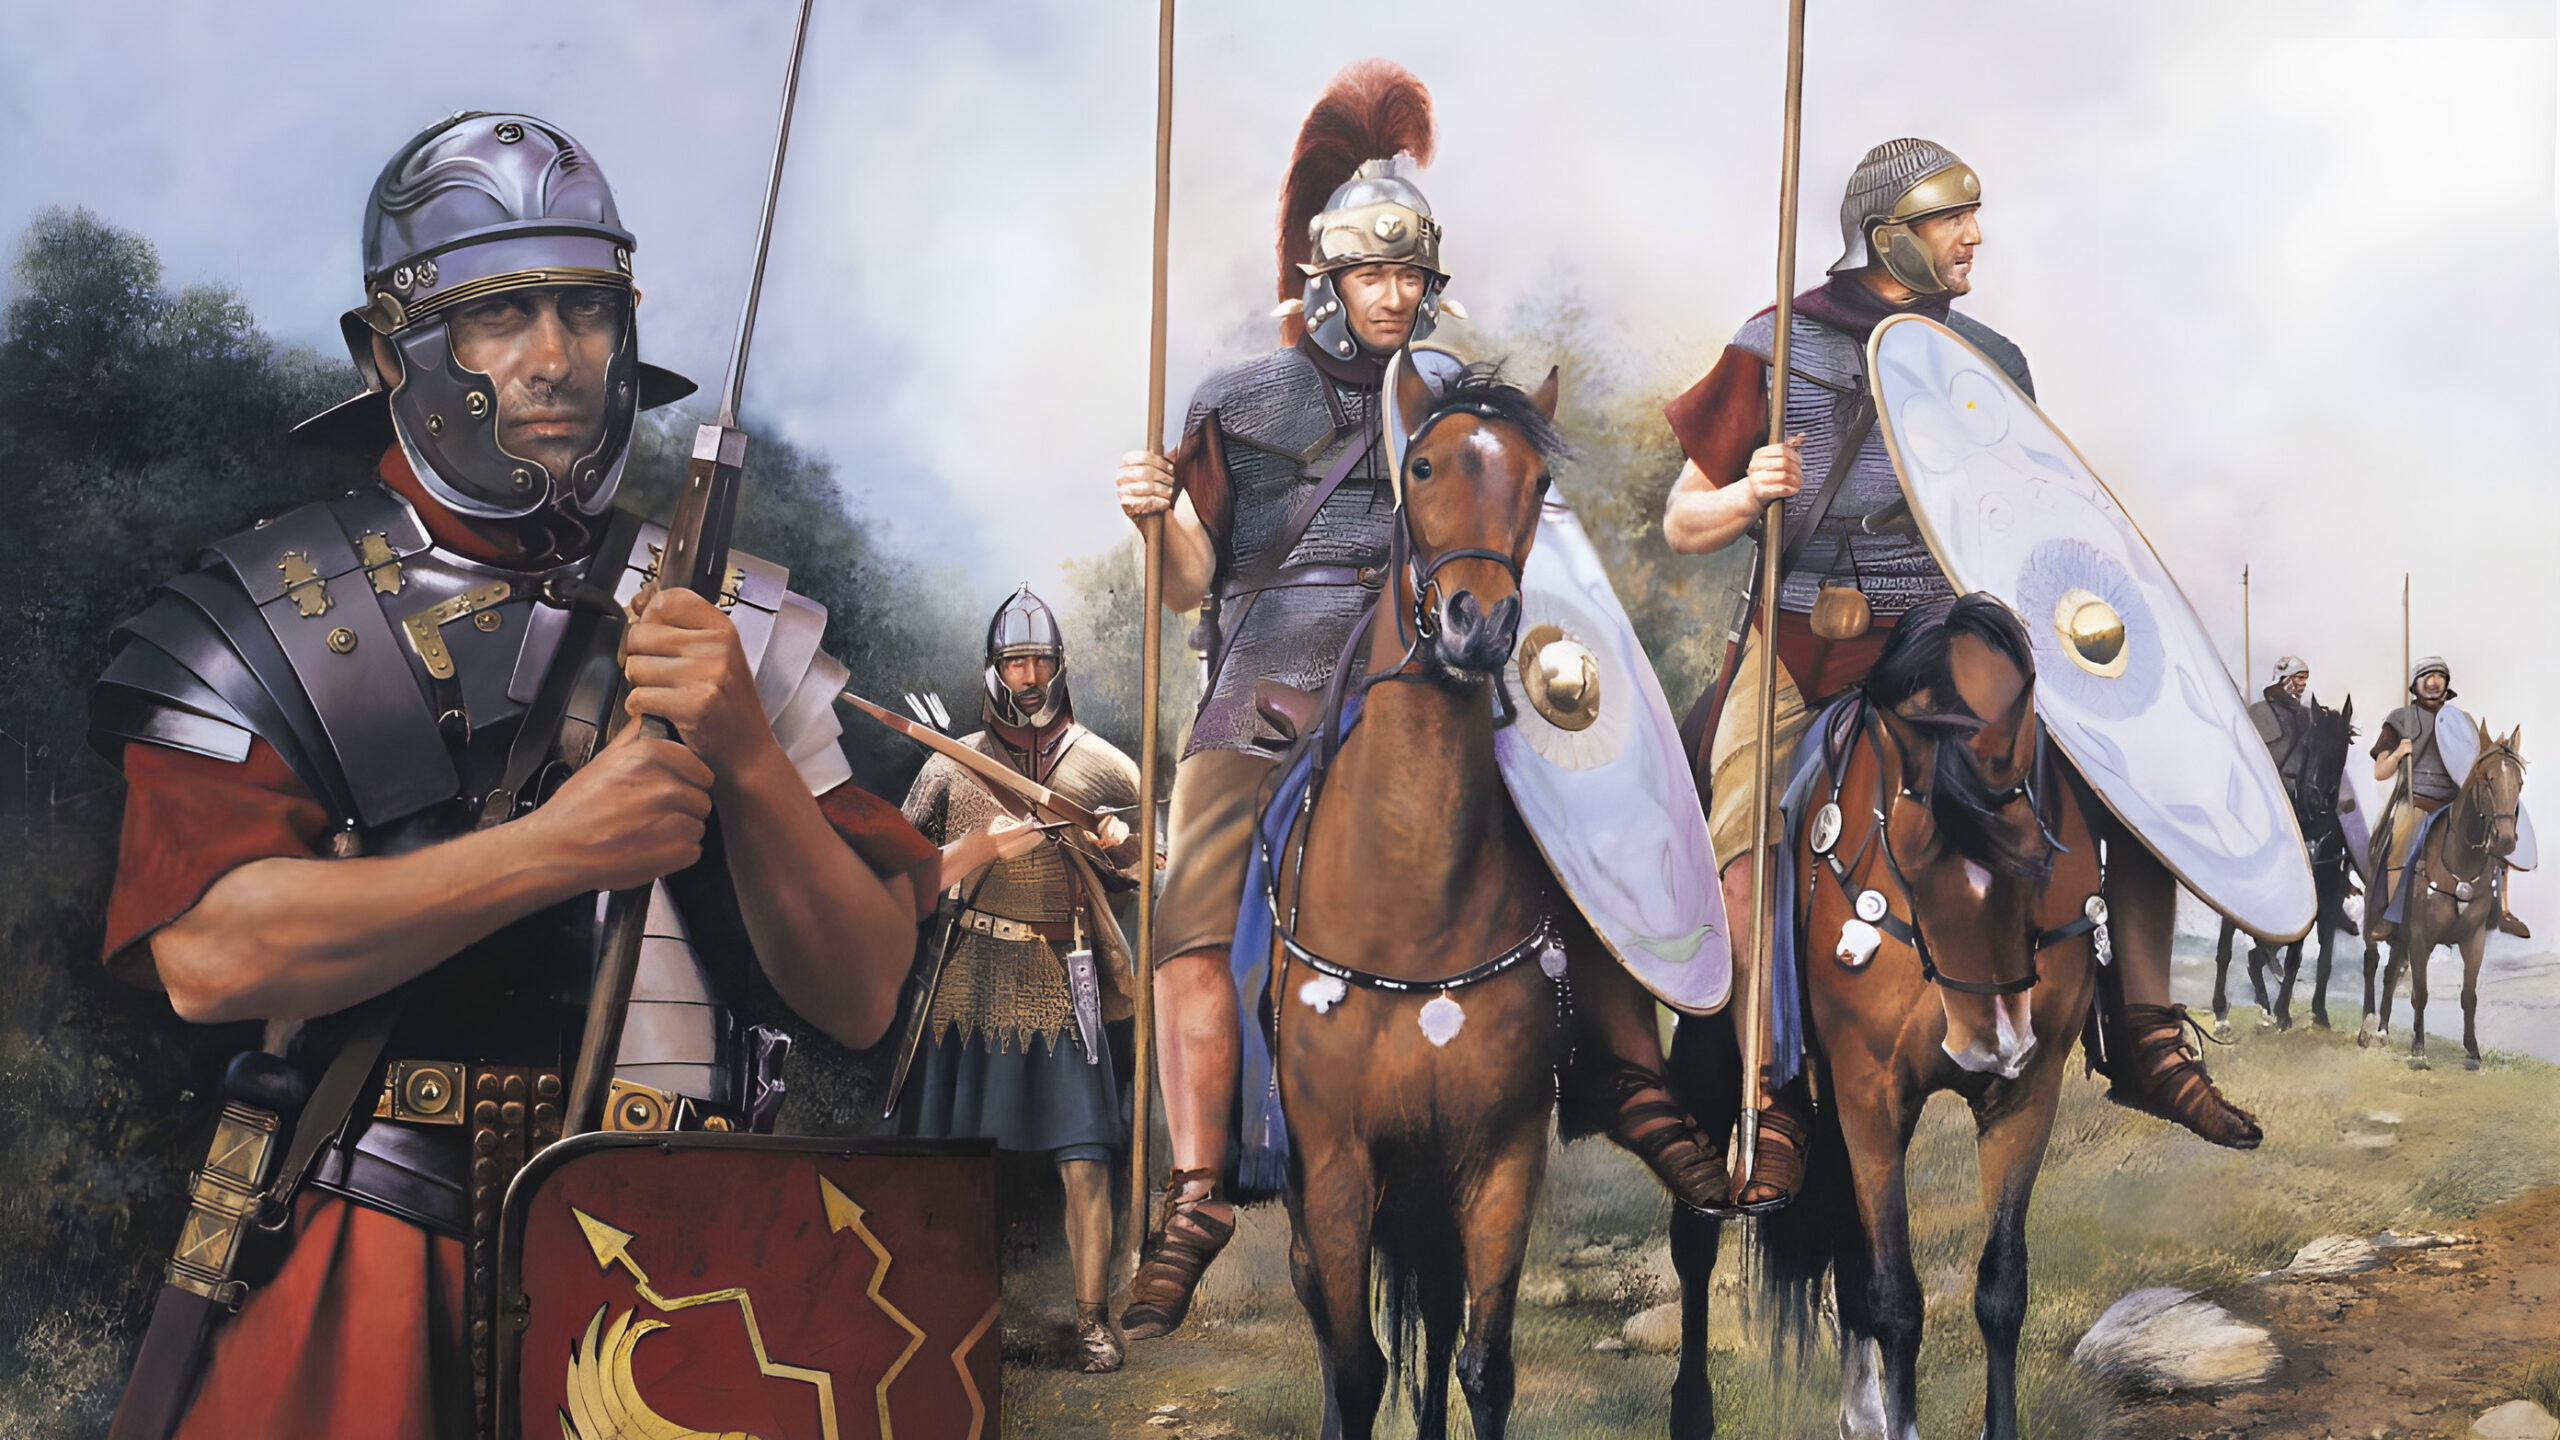 Римская ала. Конница Римского легиона. Римская армия кавалерия. Римская конница кавалерист империи.